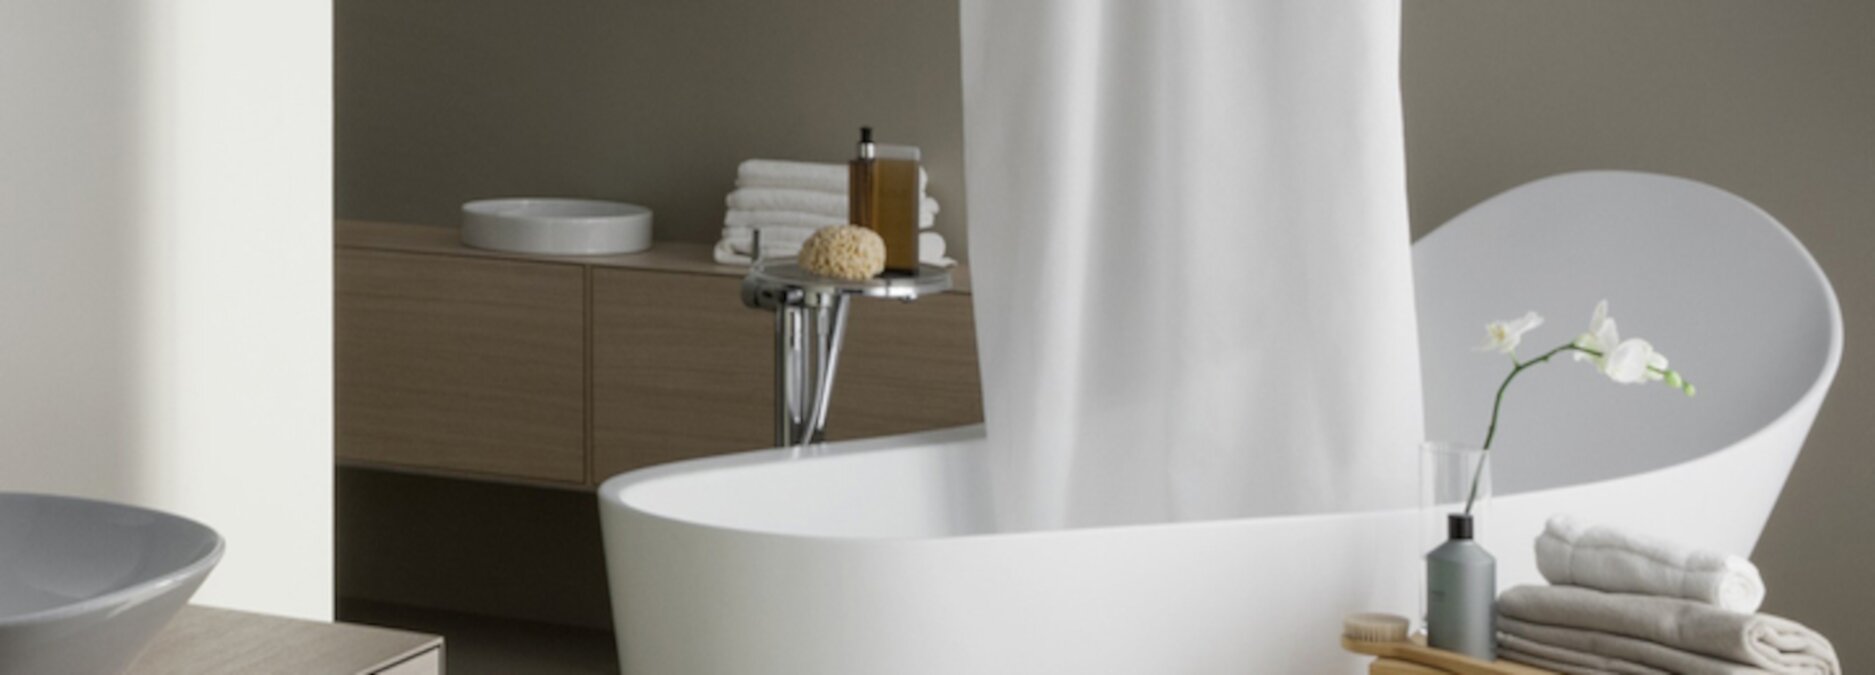 Badewanne mit Duschvorhang oder Duschwand: Was ist besser fürs Duschen in der Badewanne?  - Duschvorhang oder Duschwand | Blog ssd-armaturenshop.de